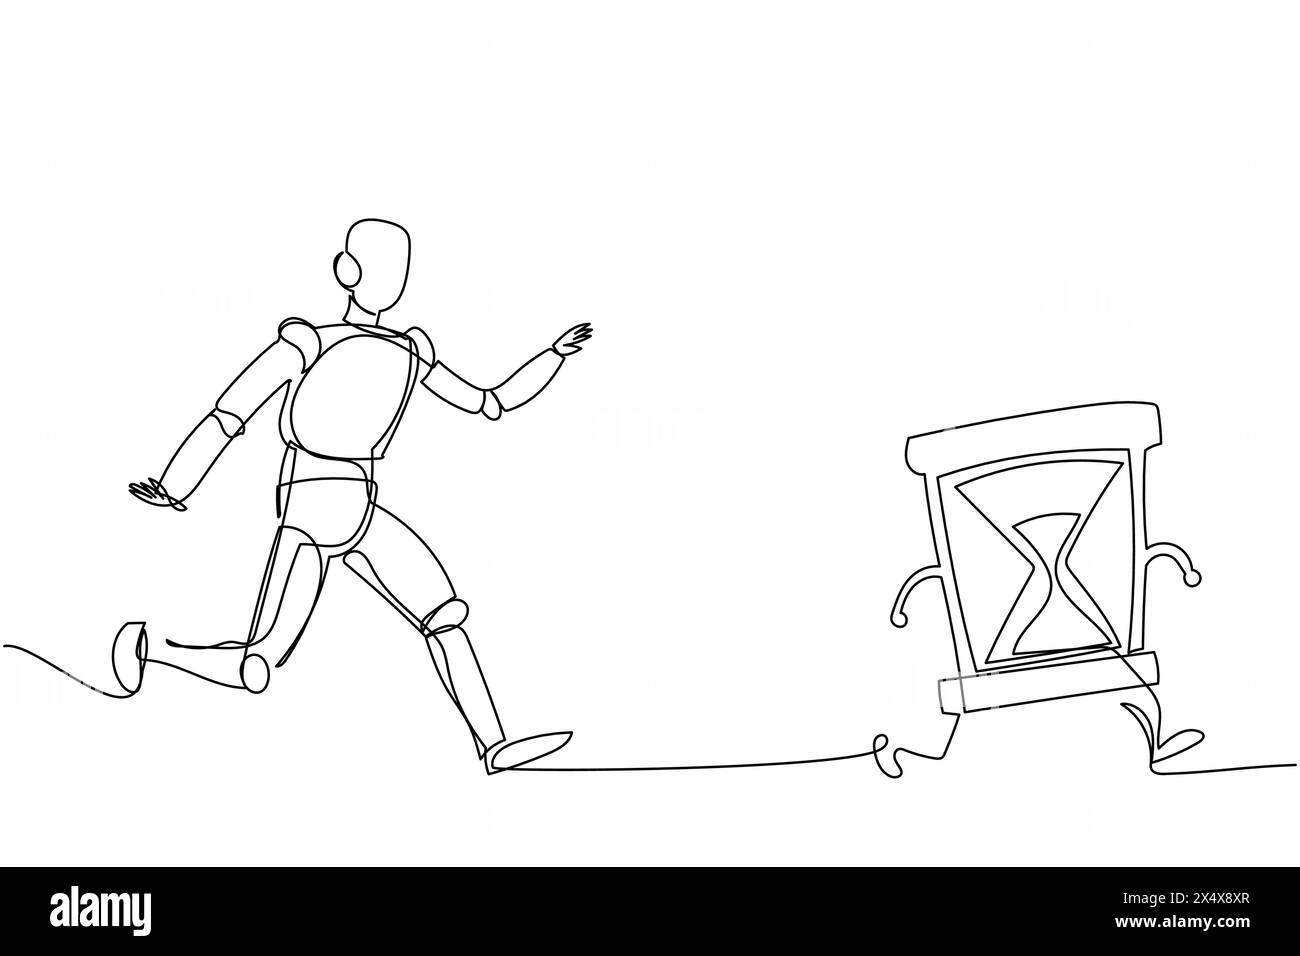 Roboter mit durchgehender einzeiliger Zeichnung, der Sanduhr nachjagt. Zeitmanagement und Betriebszeitplan der Fabrik. Humanoide Roboter-kybernetische Organismus-Entwicklung Stock Vektor